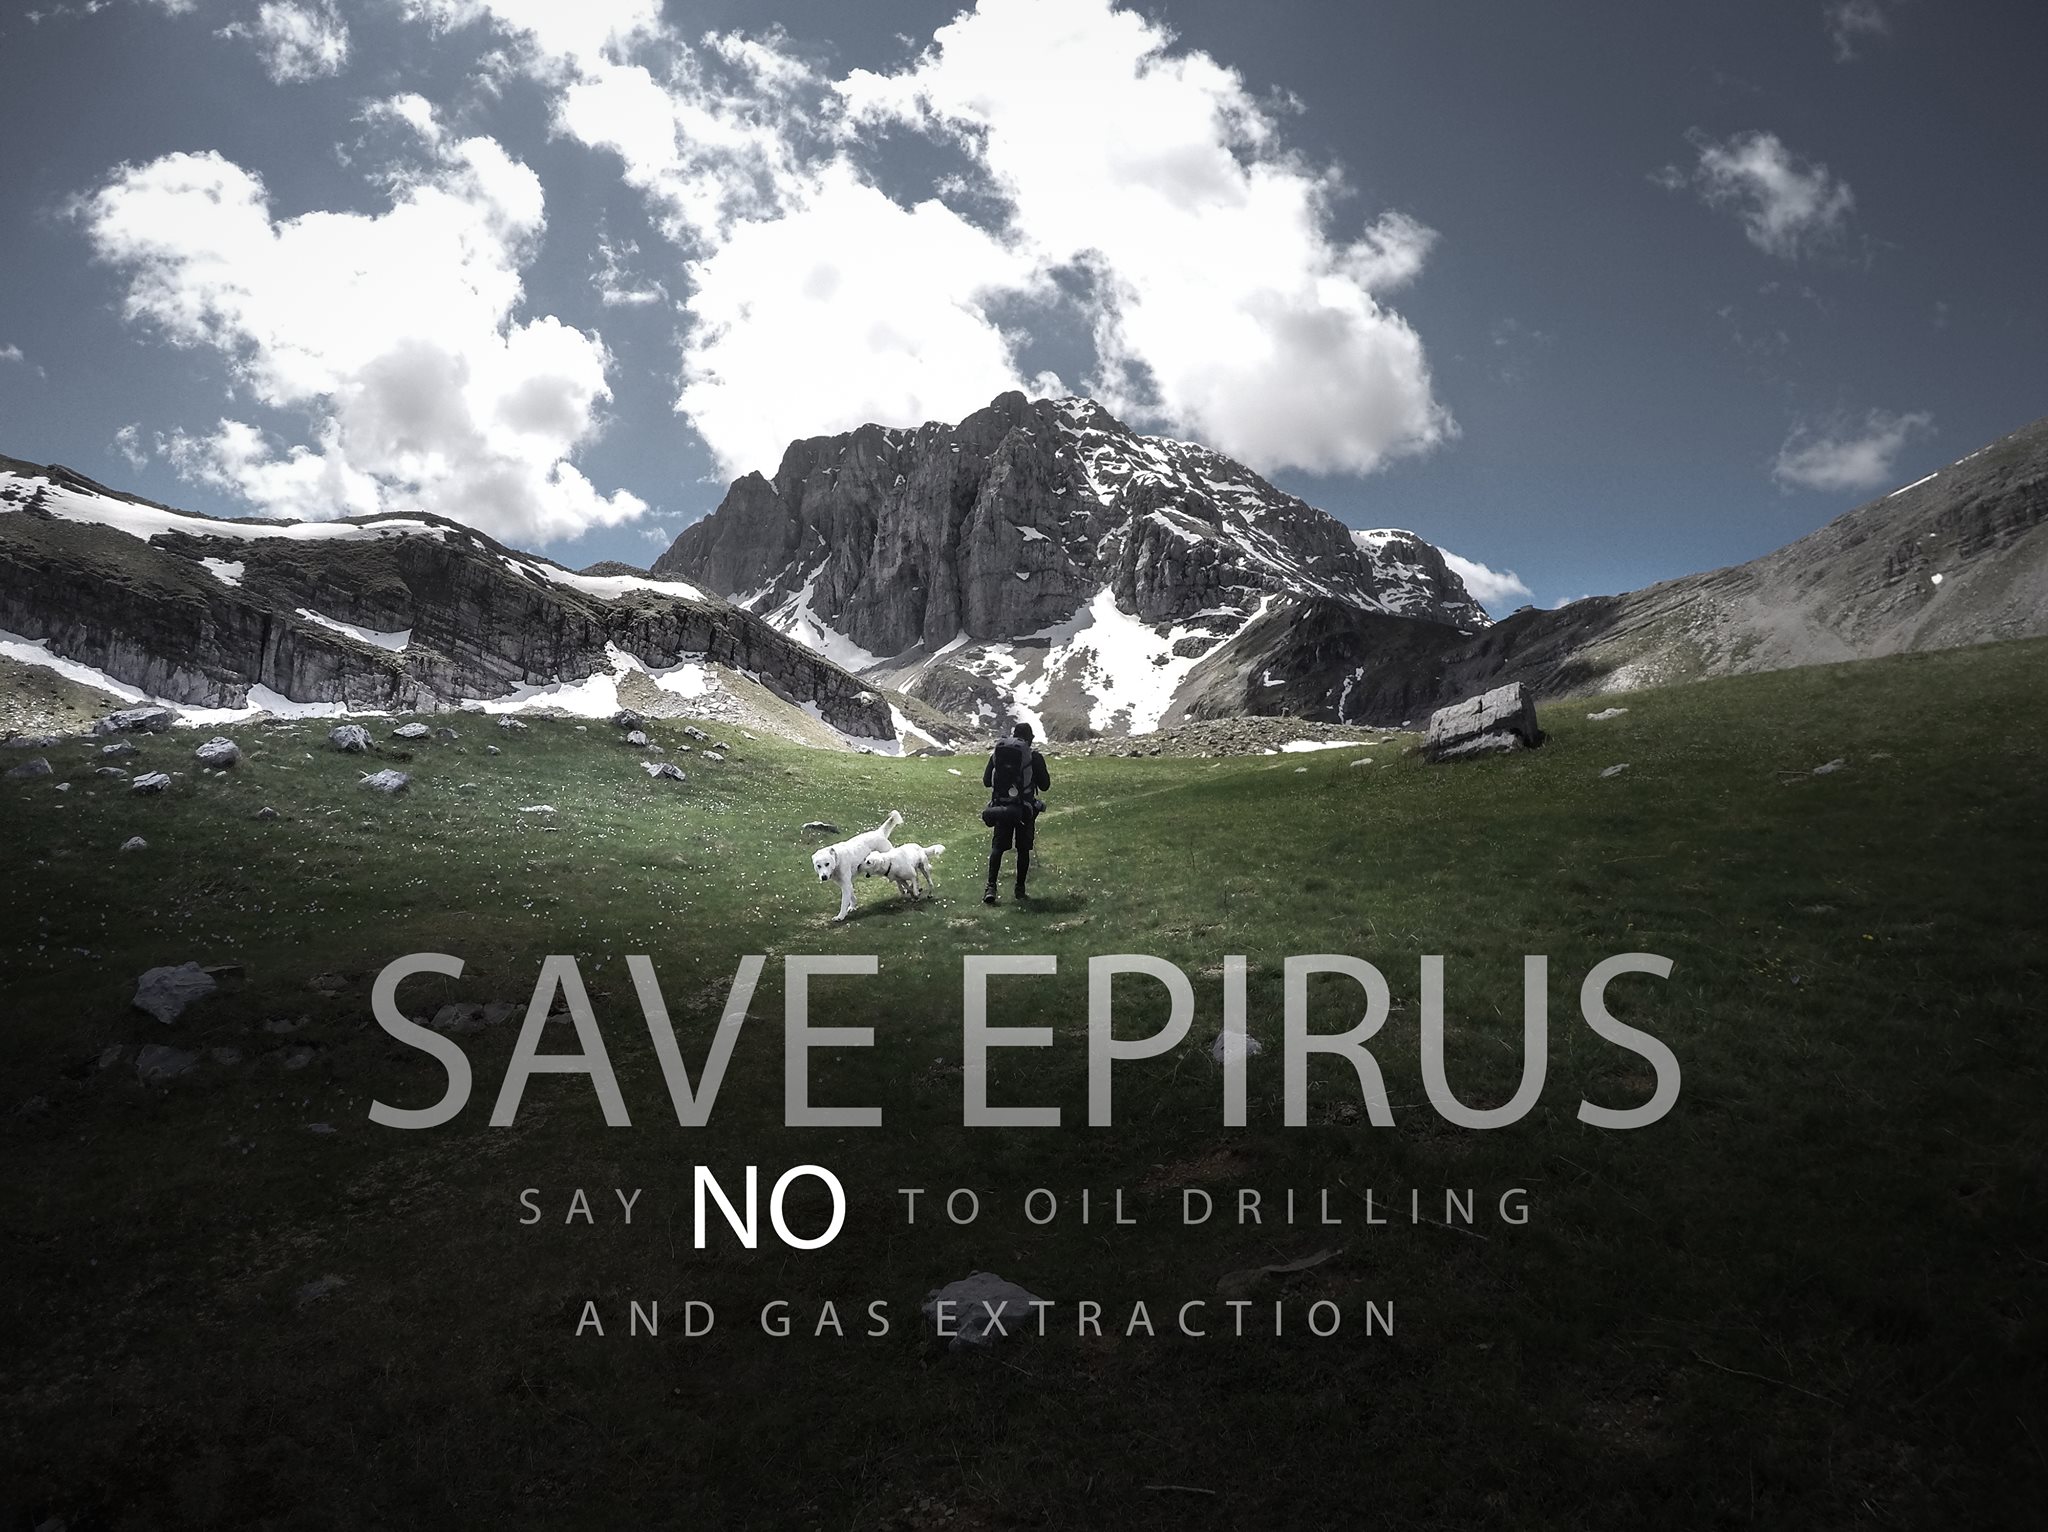 Εξορύξεις υδρογονανθράκων στην Ήπειρο; ΝΟ PASARAN #saveEpirus #skouries